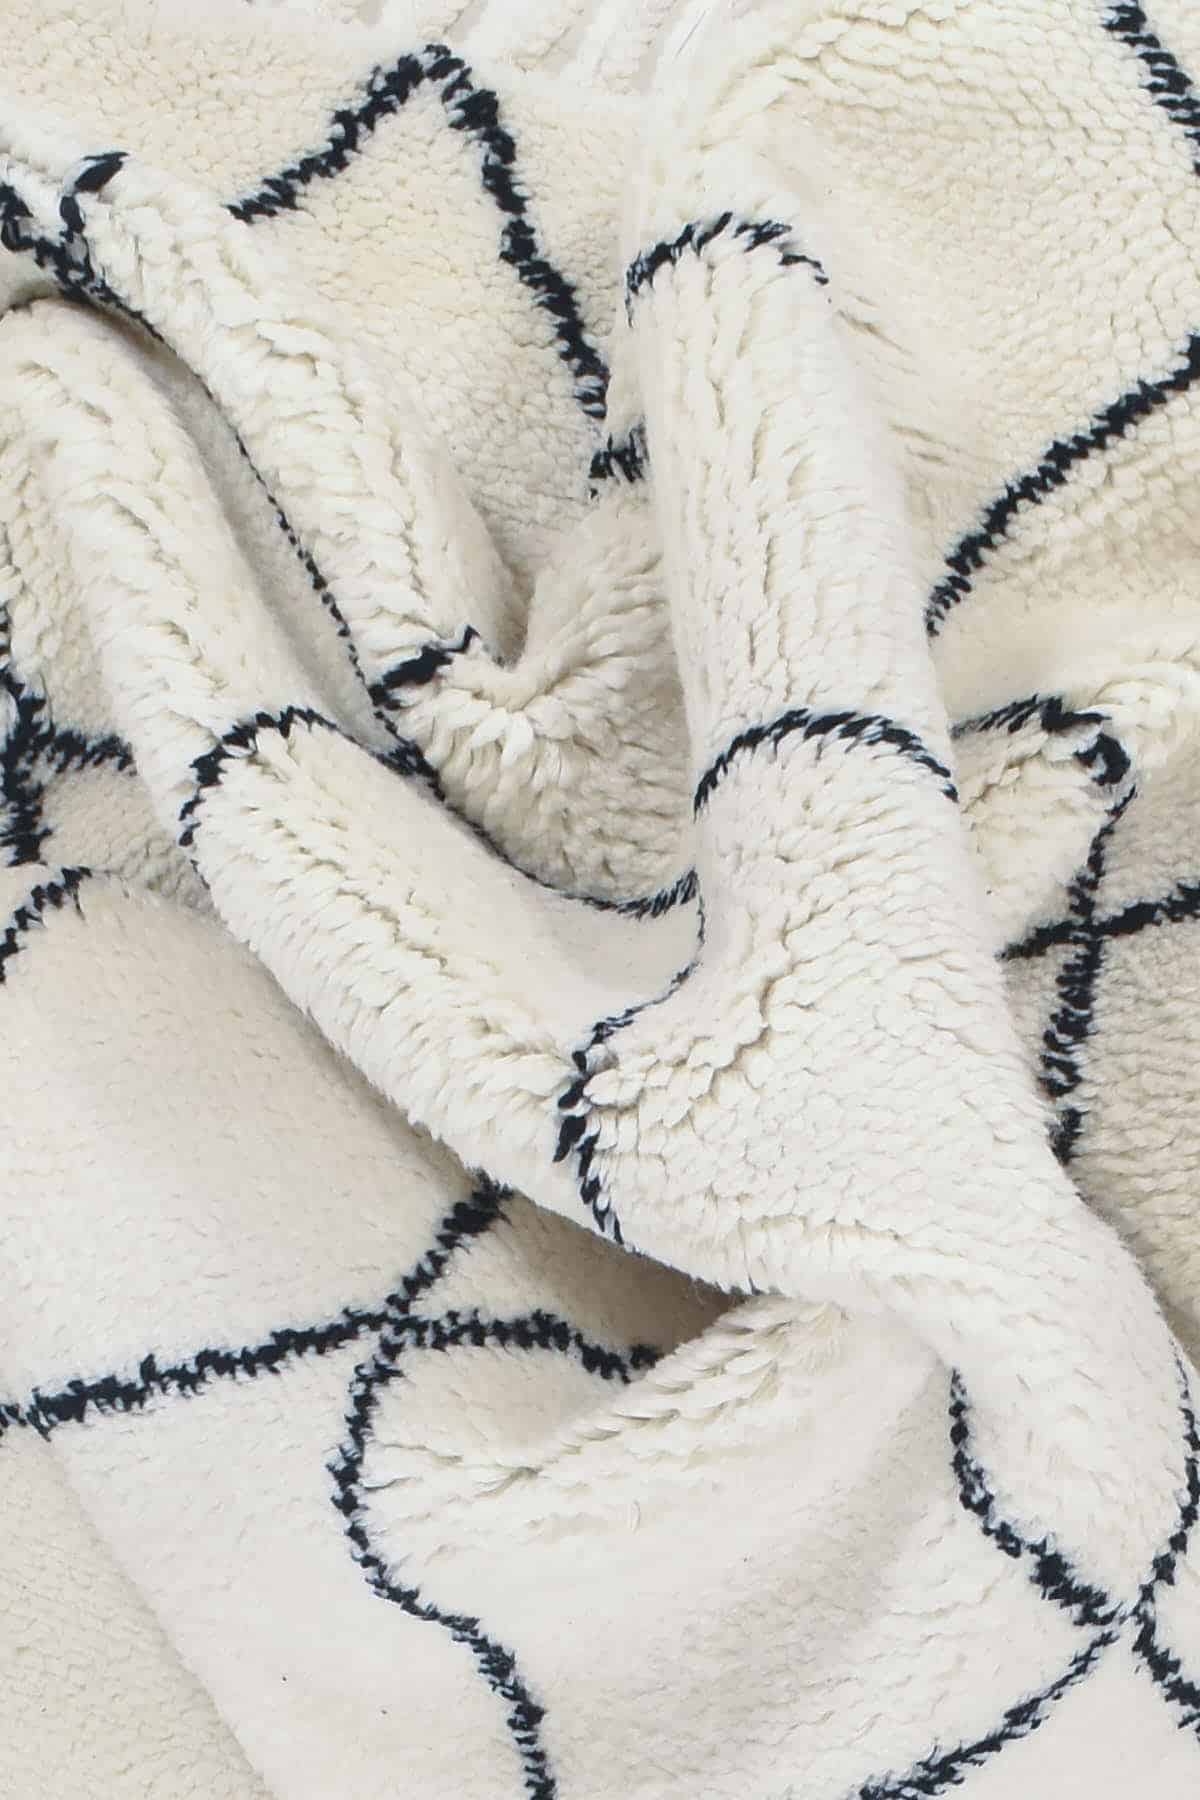 שטיח ברבר מרוקאי 08 שחור לבן